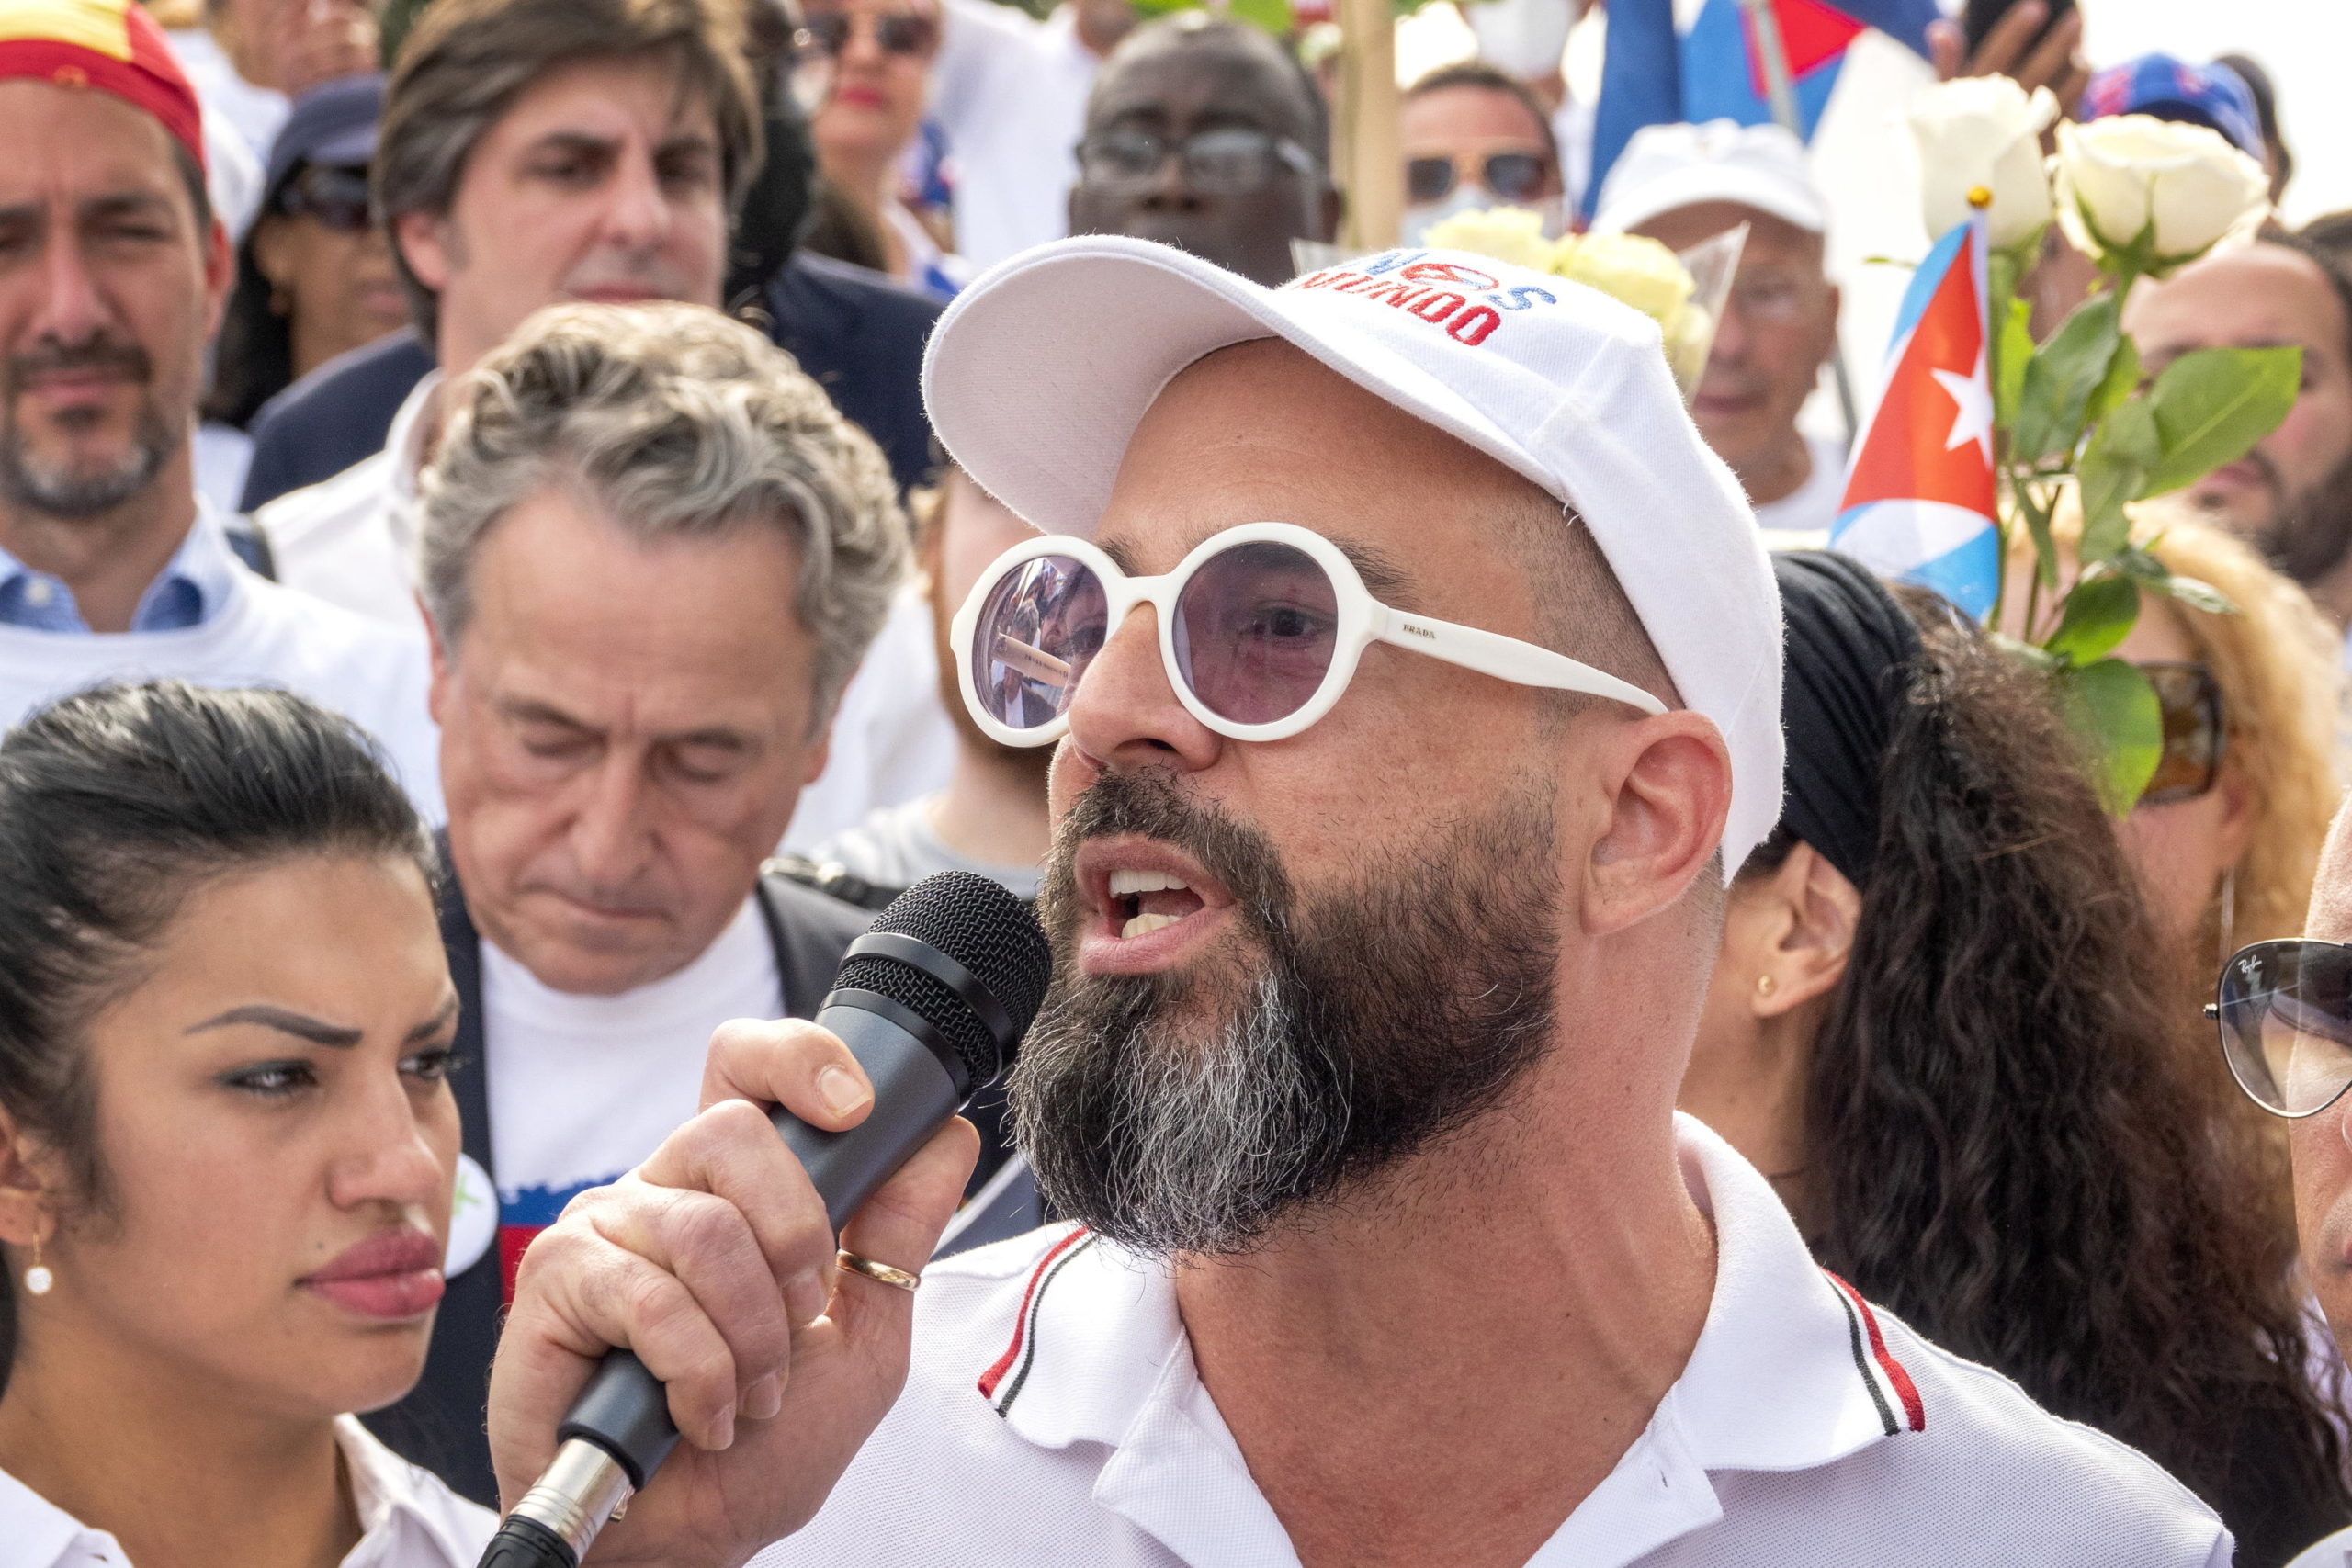 L'attivista cubano Alexander Otaola e alcuni attivisti per la libertà, partecipano a una manifestazione a sostegno del popolo cubano contro il governo di Cuba a Miami, in Florida